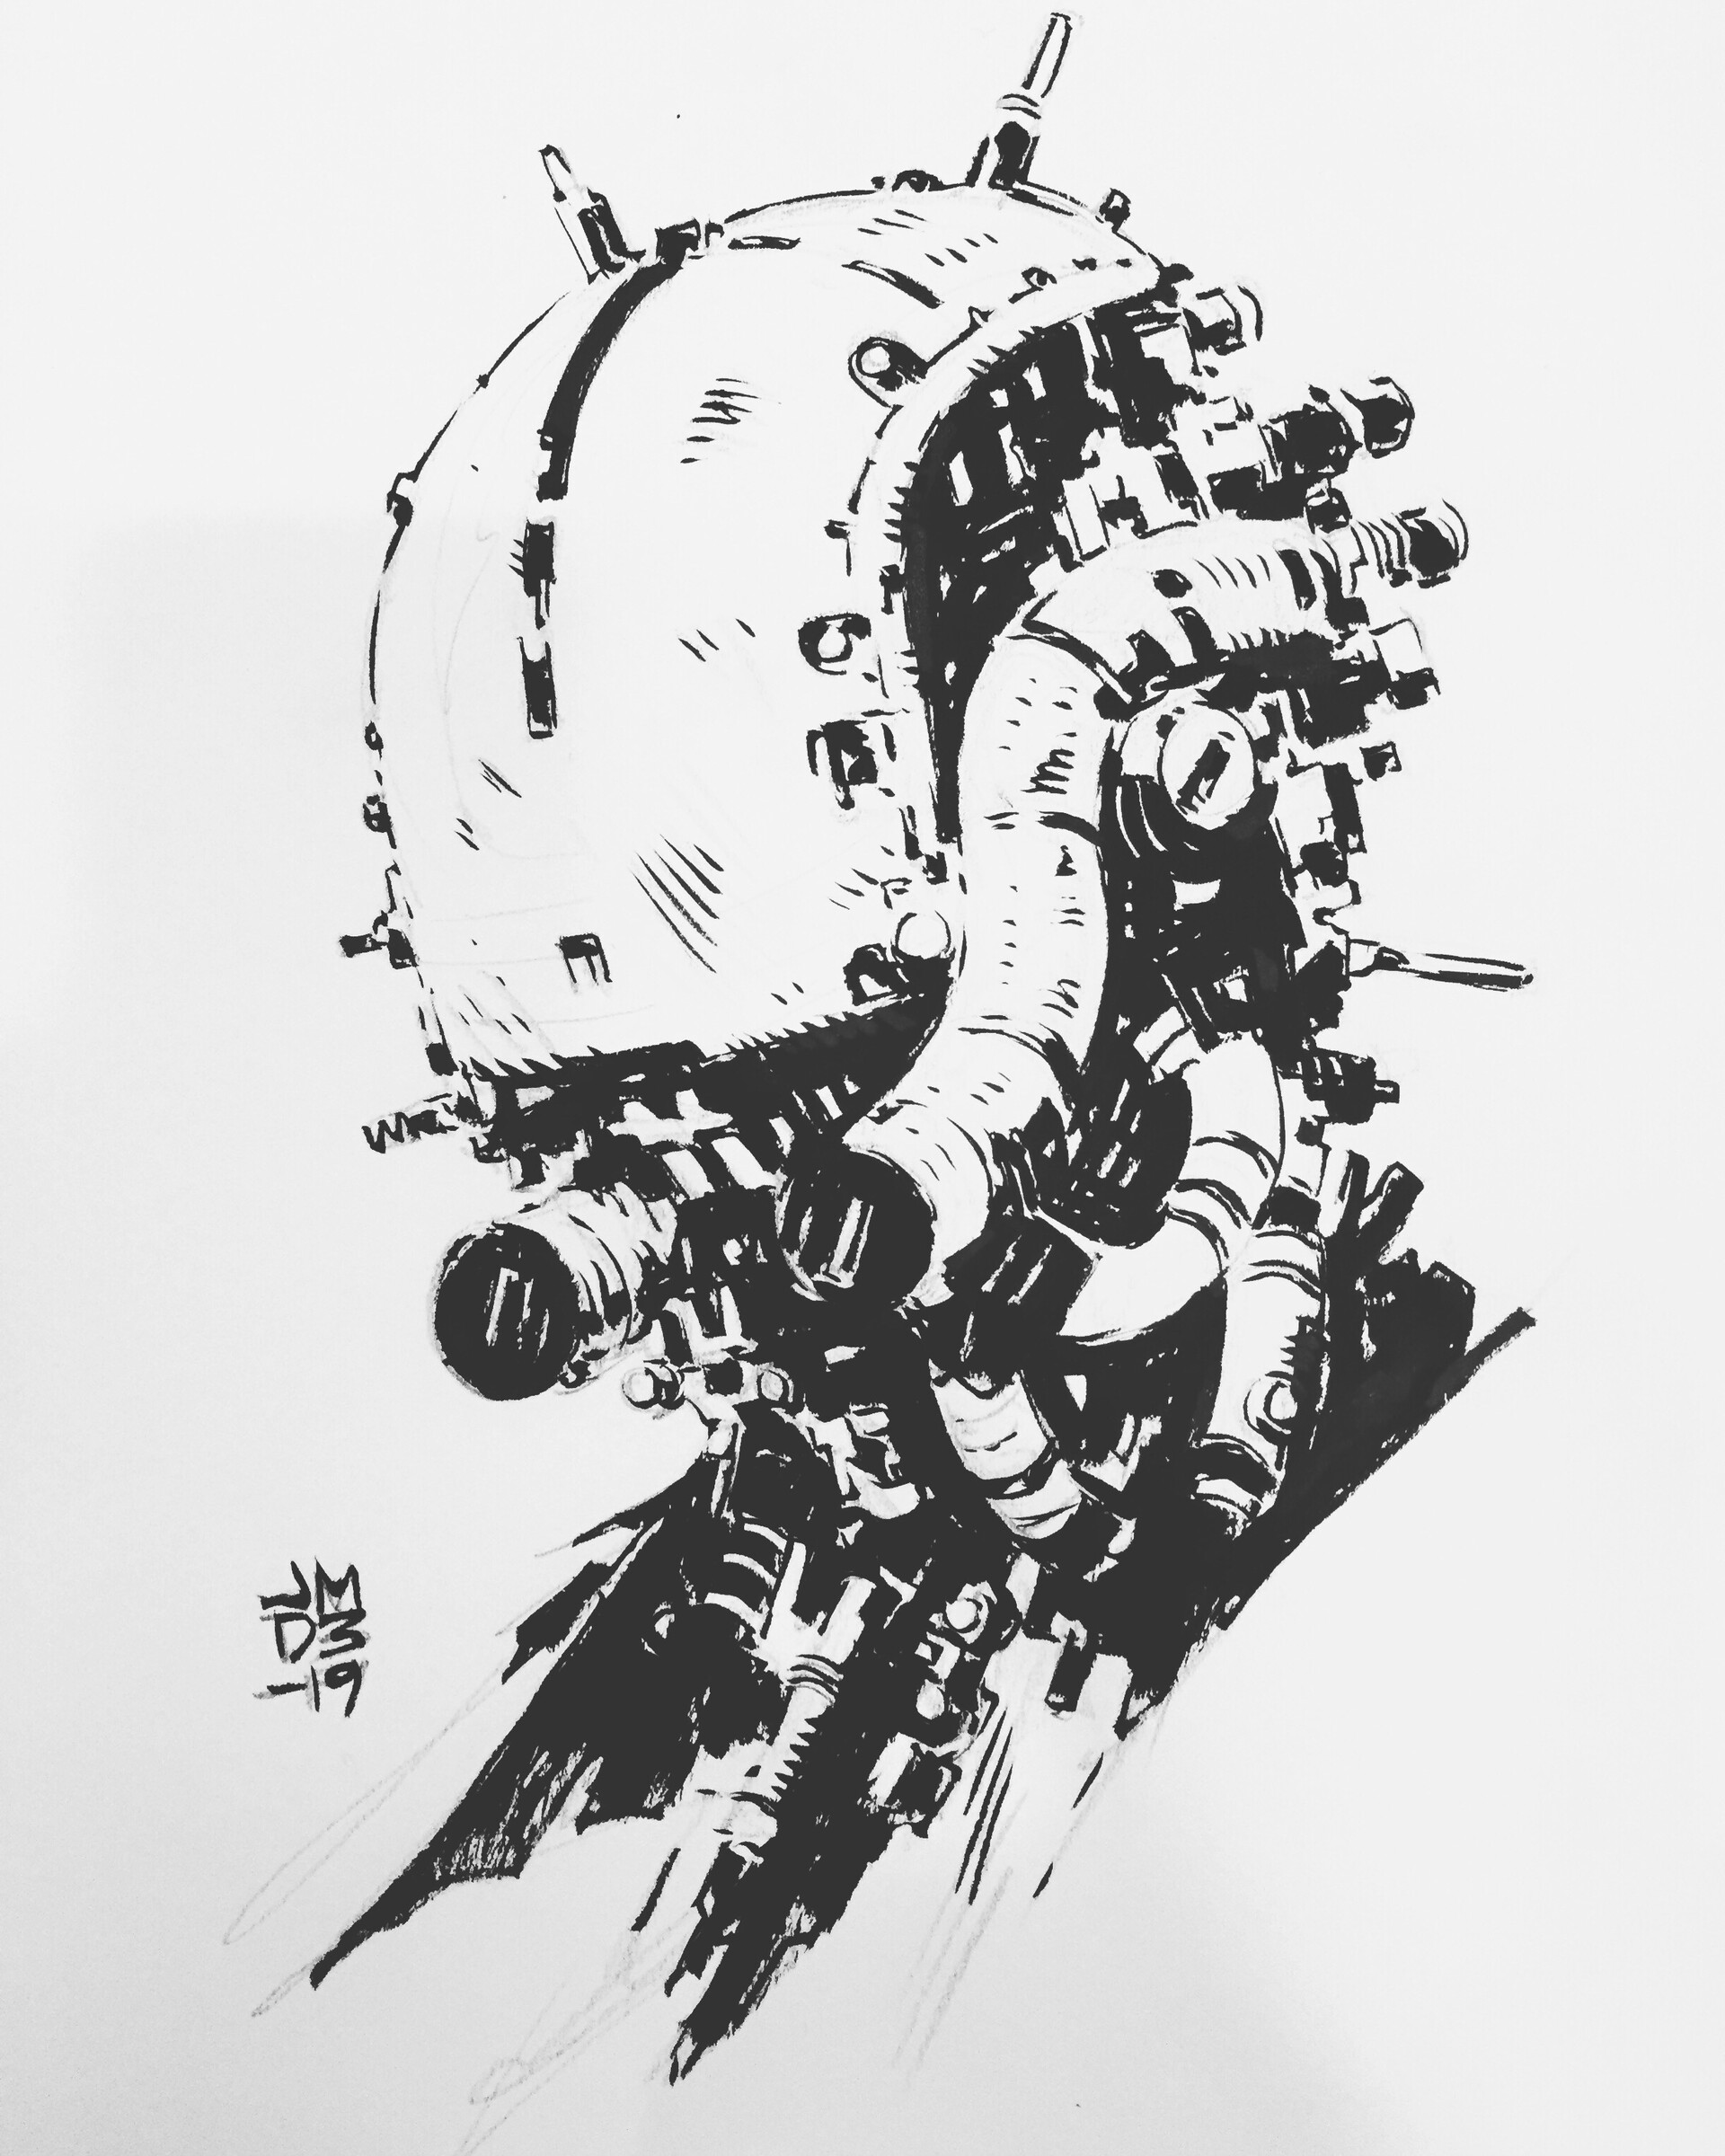 ArtStation - March of Robots